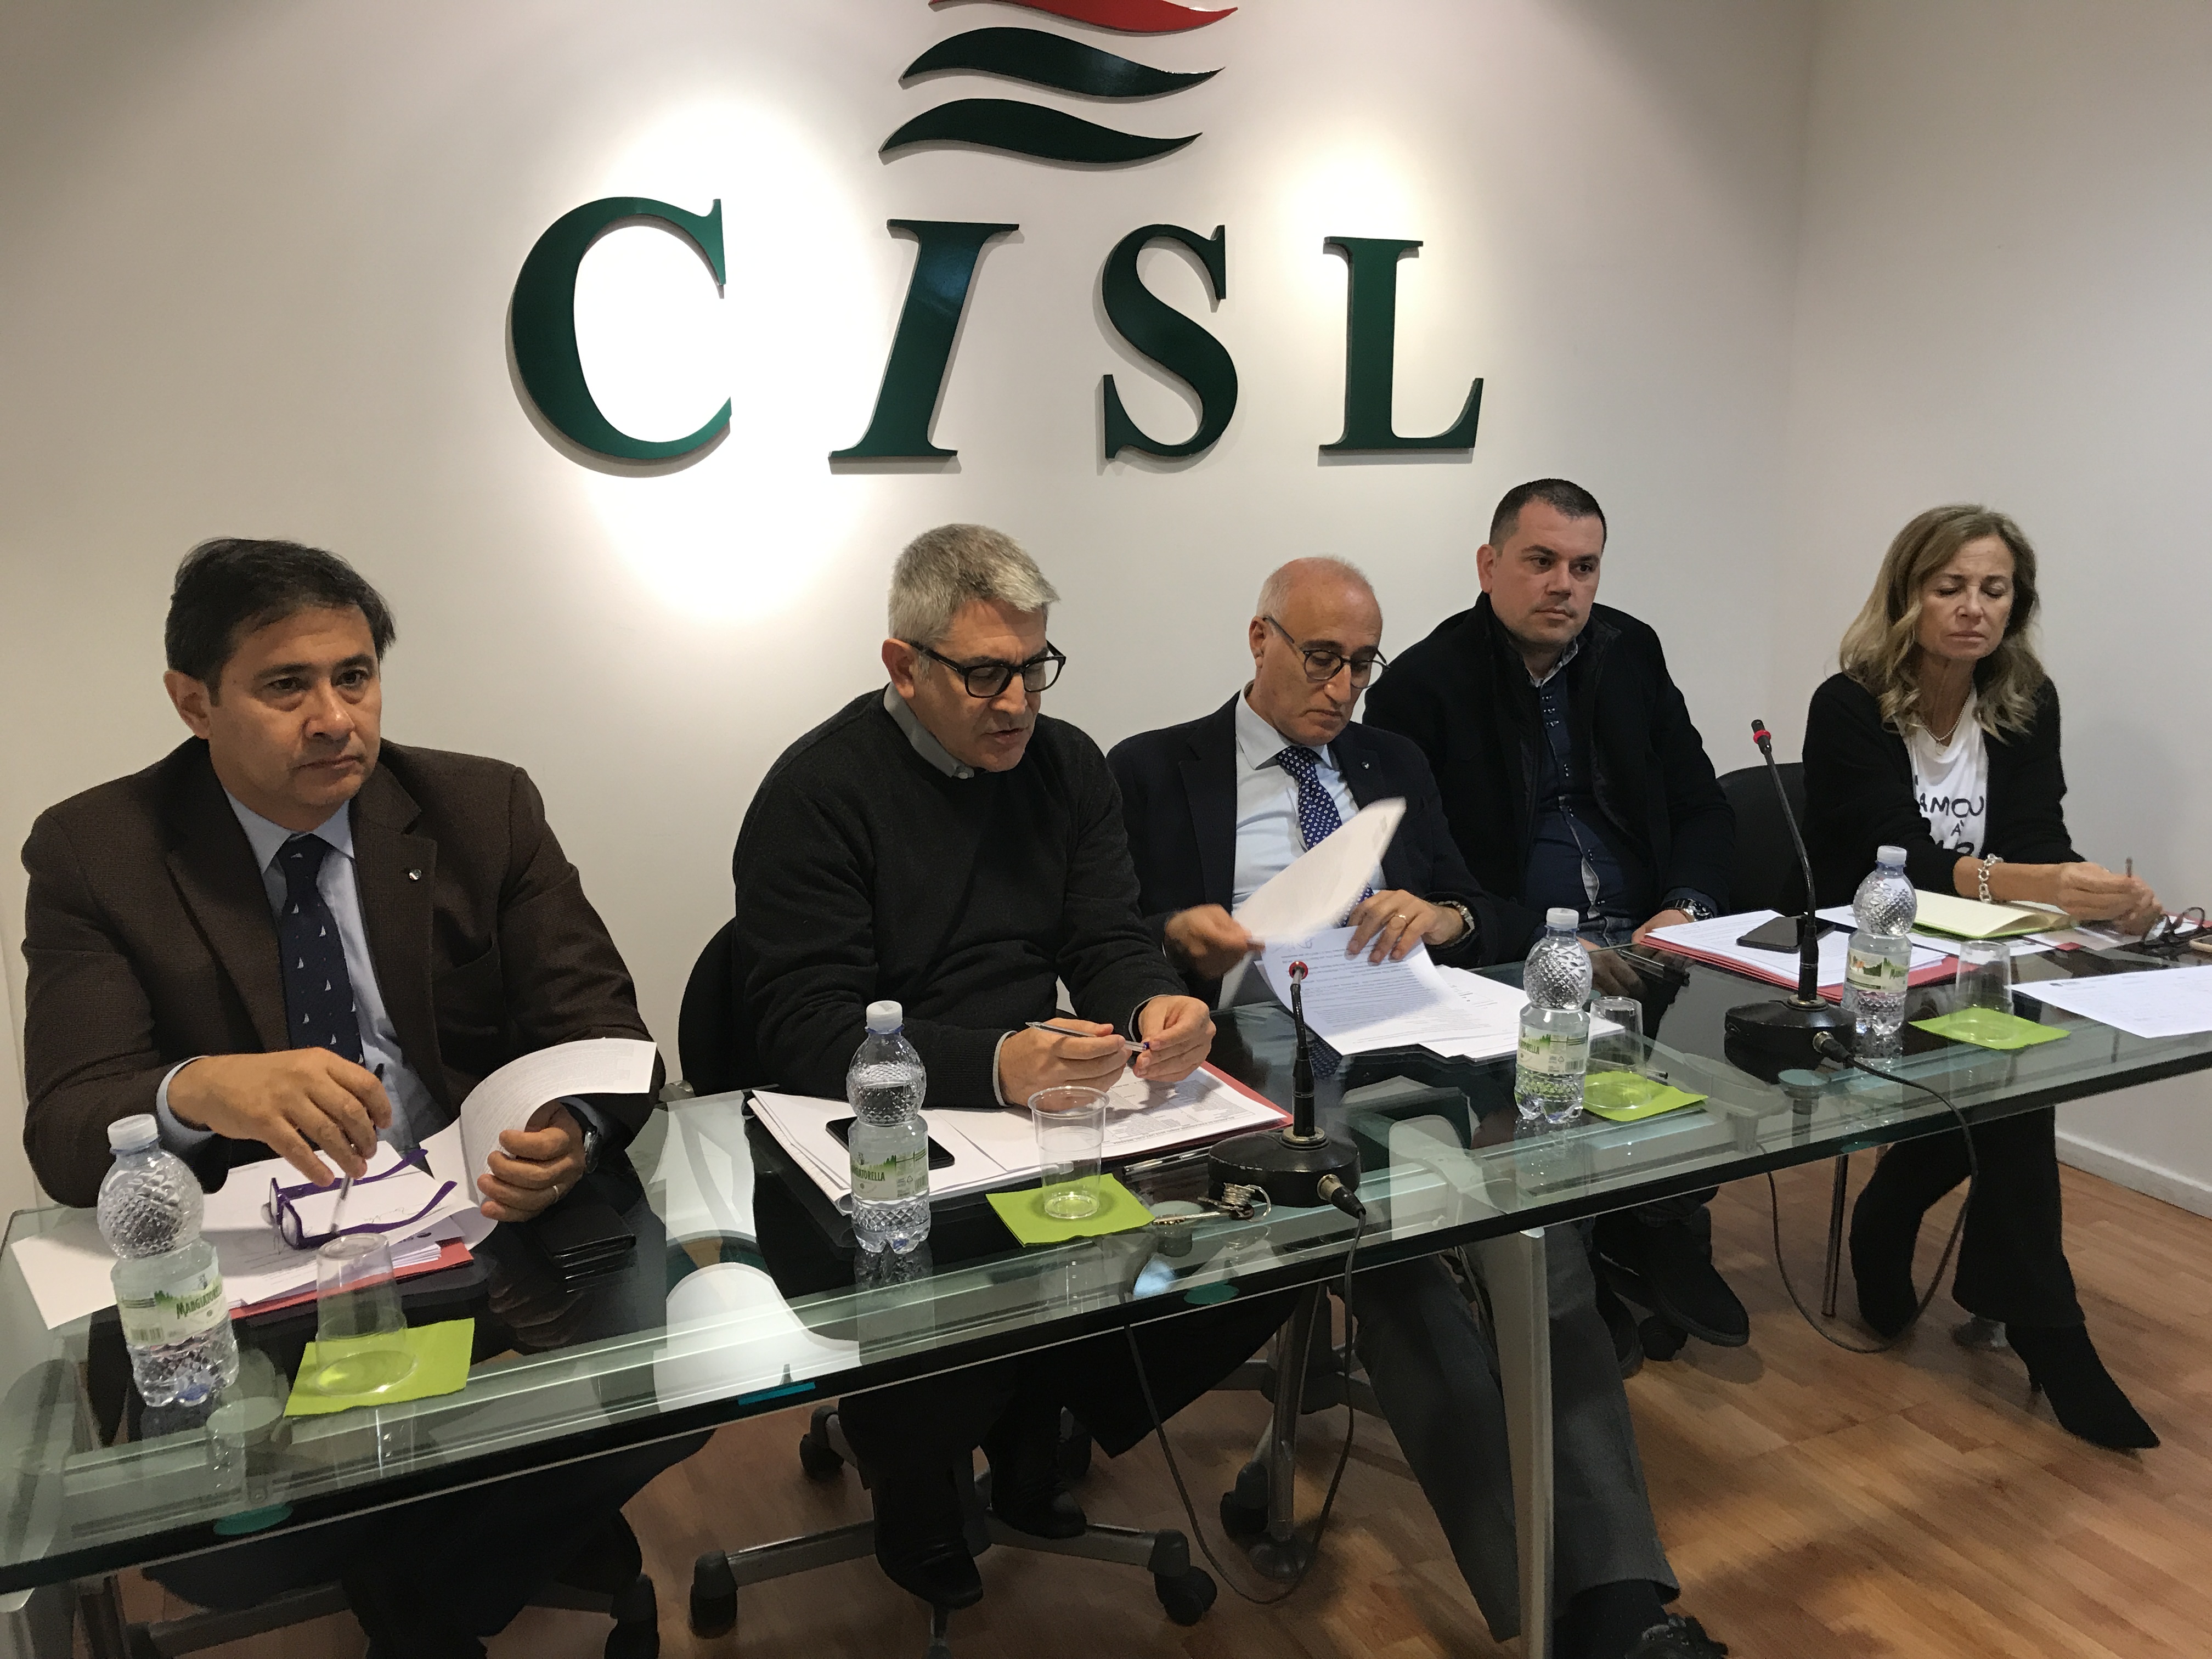 Cisl Messina. Il segretario Tonino Genovese rivendica il ruolo del sindacato nel SalvaMessina